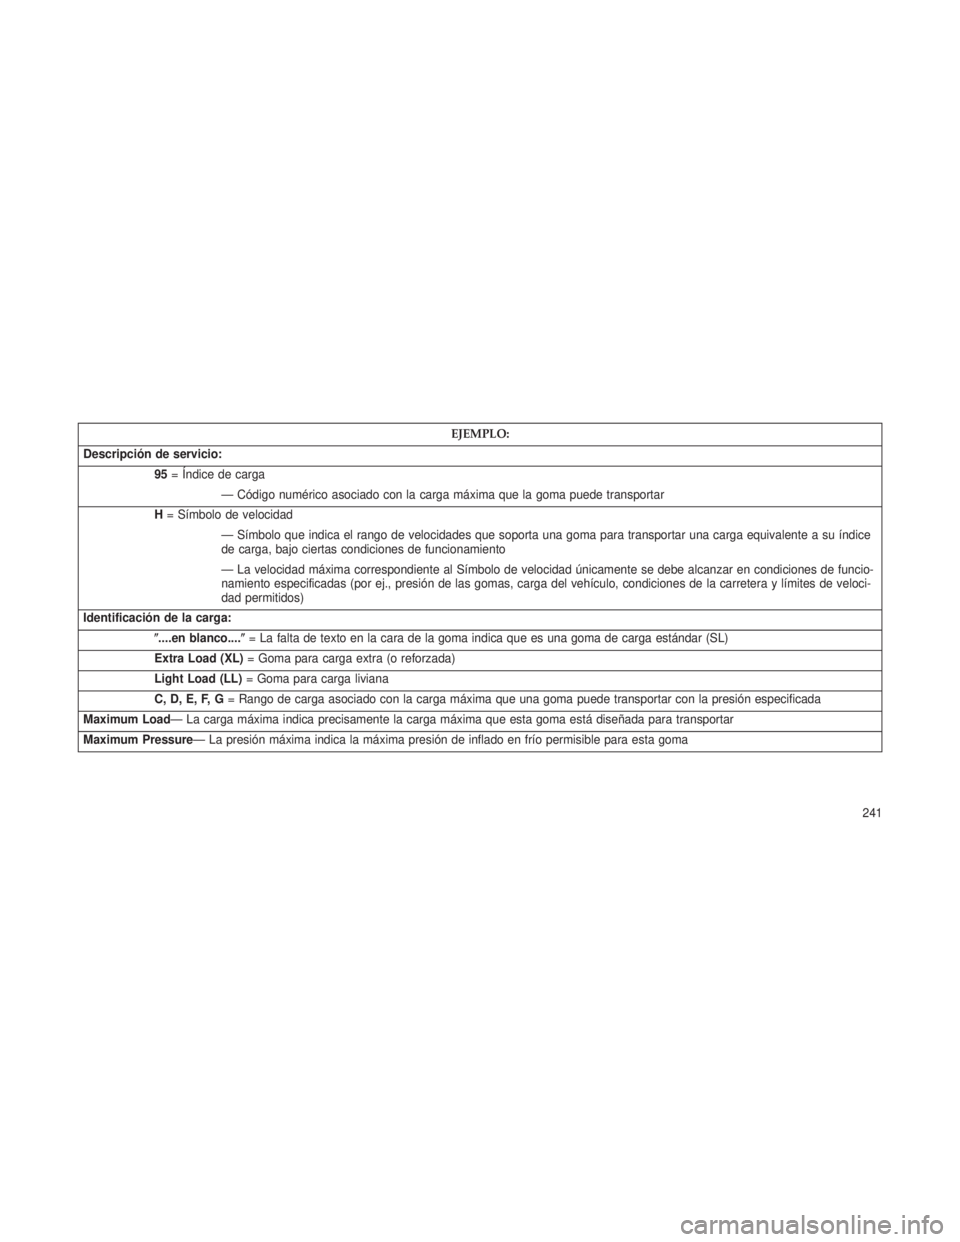 JEEP PATRIOT 2018  Manual de Empleo y Cuidado (in Spanish) EJEMPLO:
Descripción de servicio: 95= Índice de carga
— Código numérico asociado con la carga máxima que la goma puede transportar
H = Símbolo de velocidad
— Símbolo que indica el rango de 